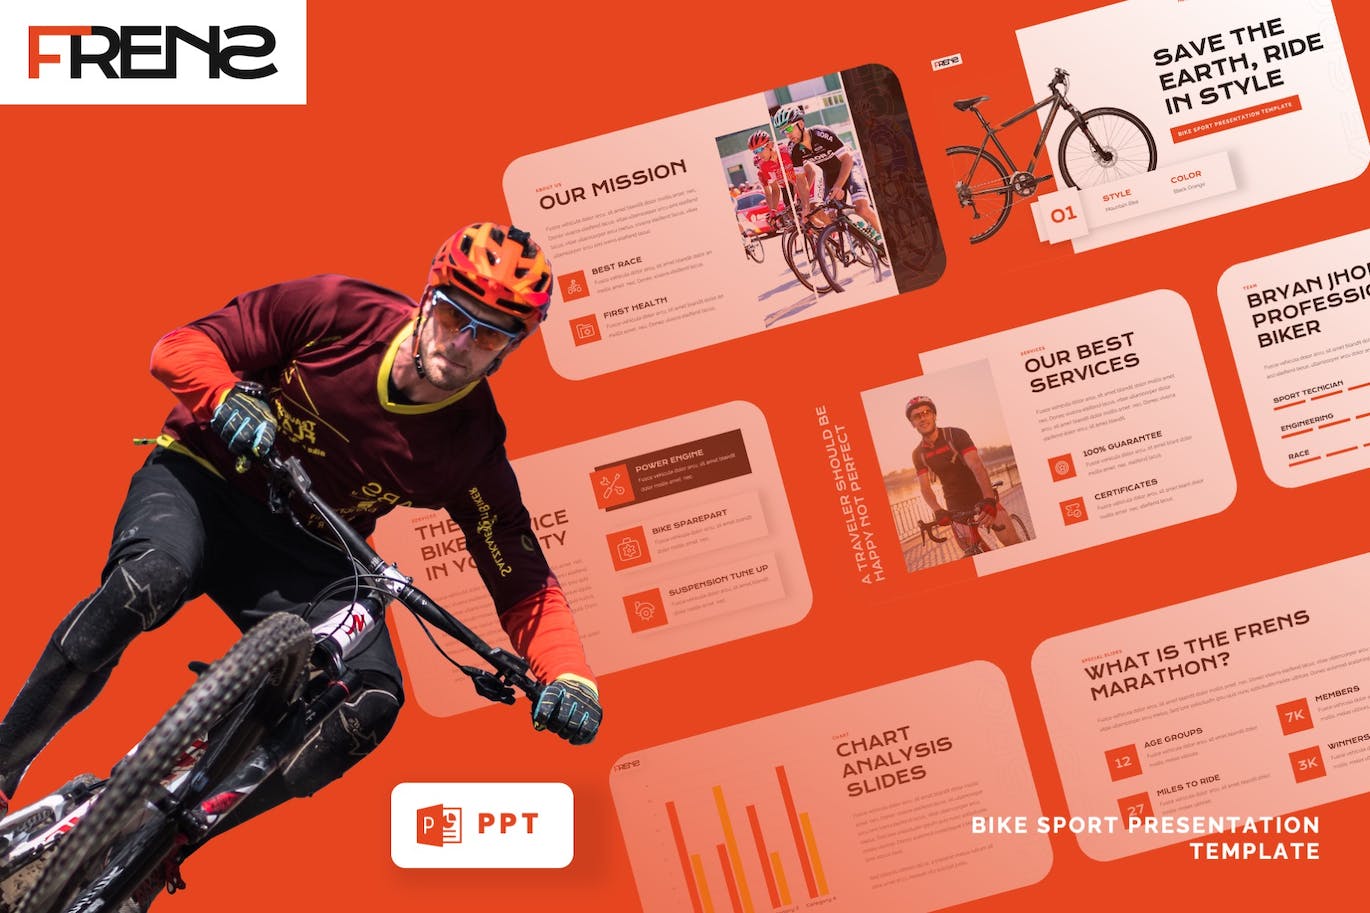 自行车运动PPT幻灯片模板 FRENS – Bike Sport Powerpoint Template 幻灯图表 第1张